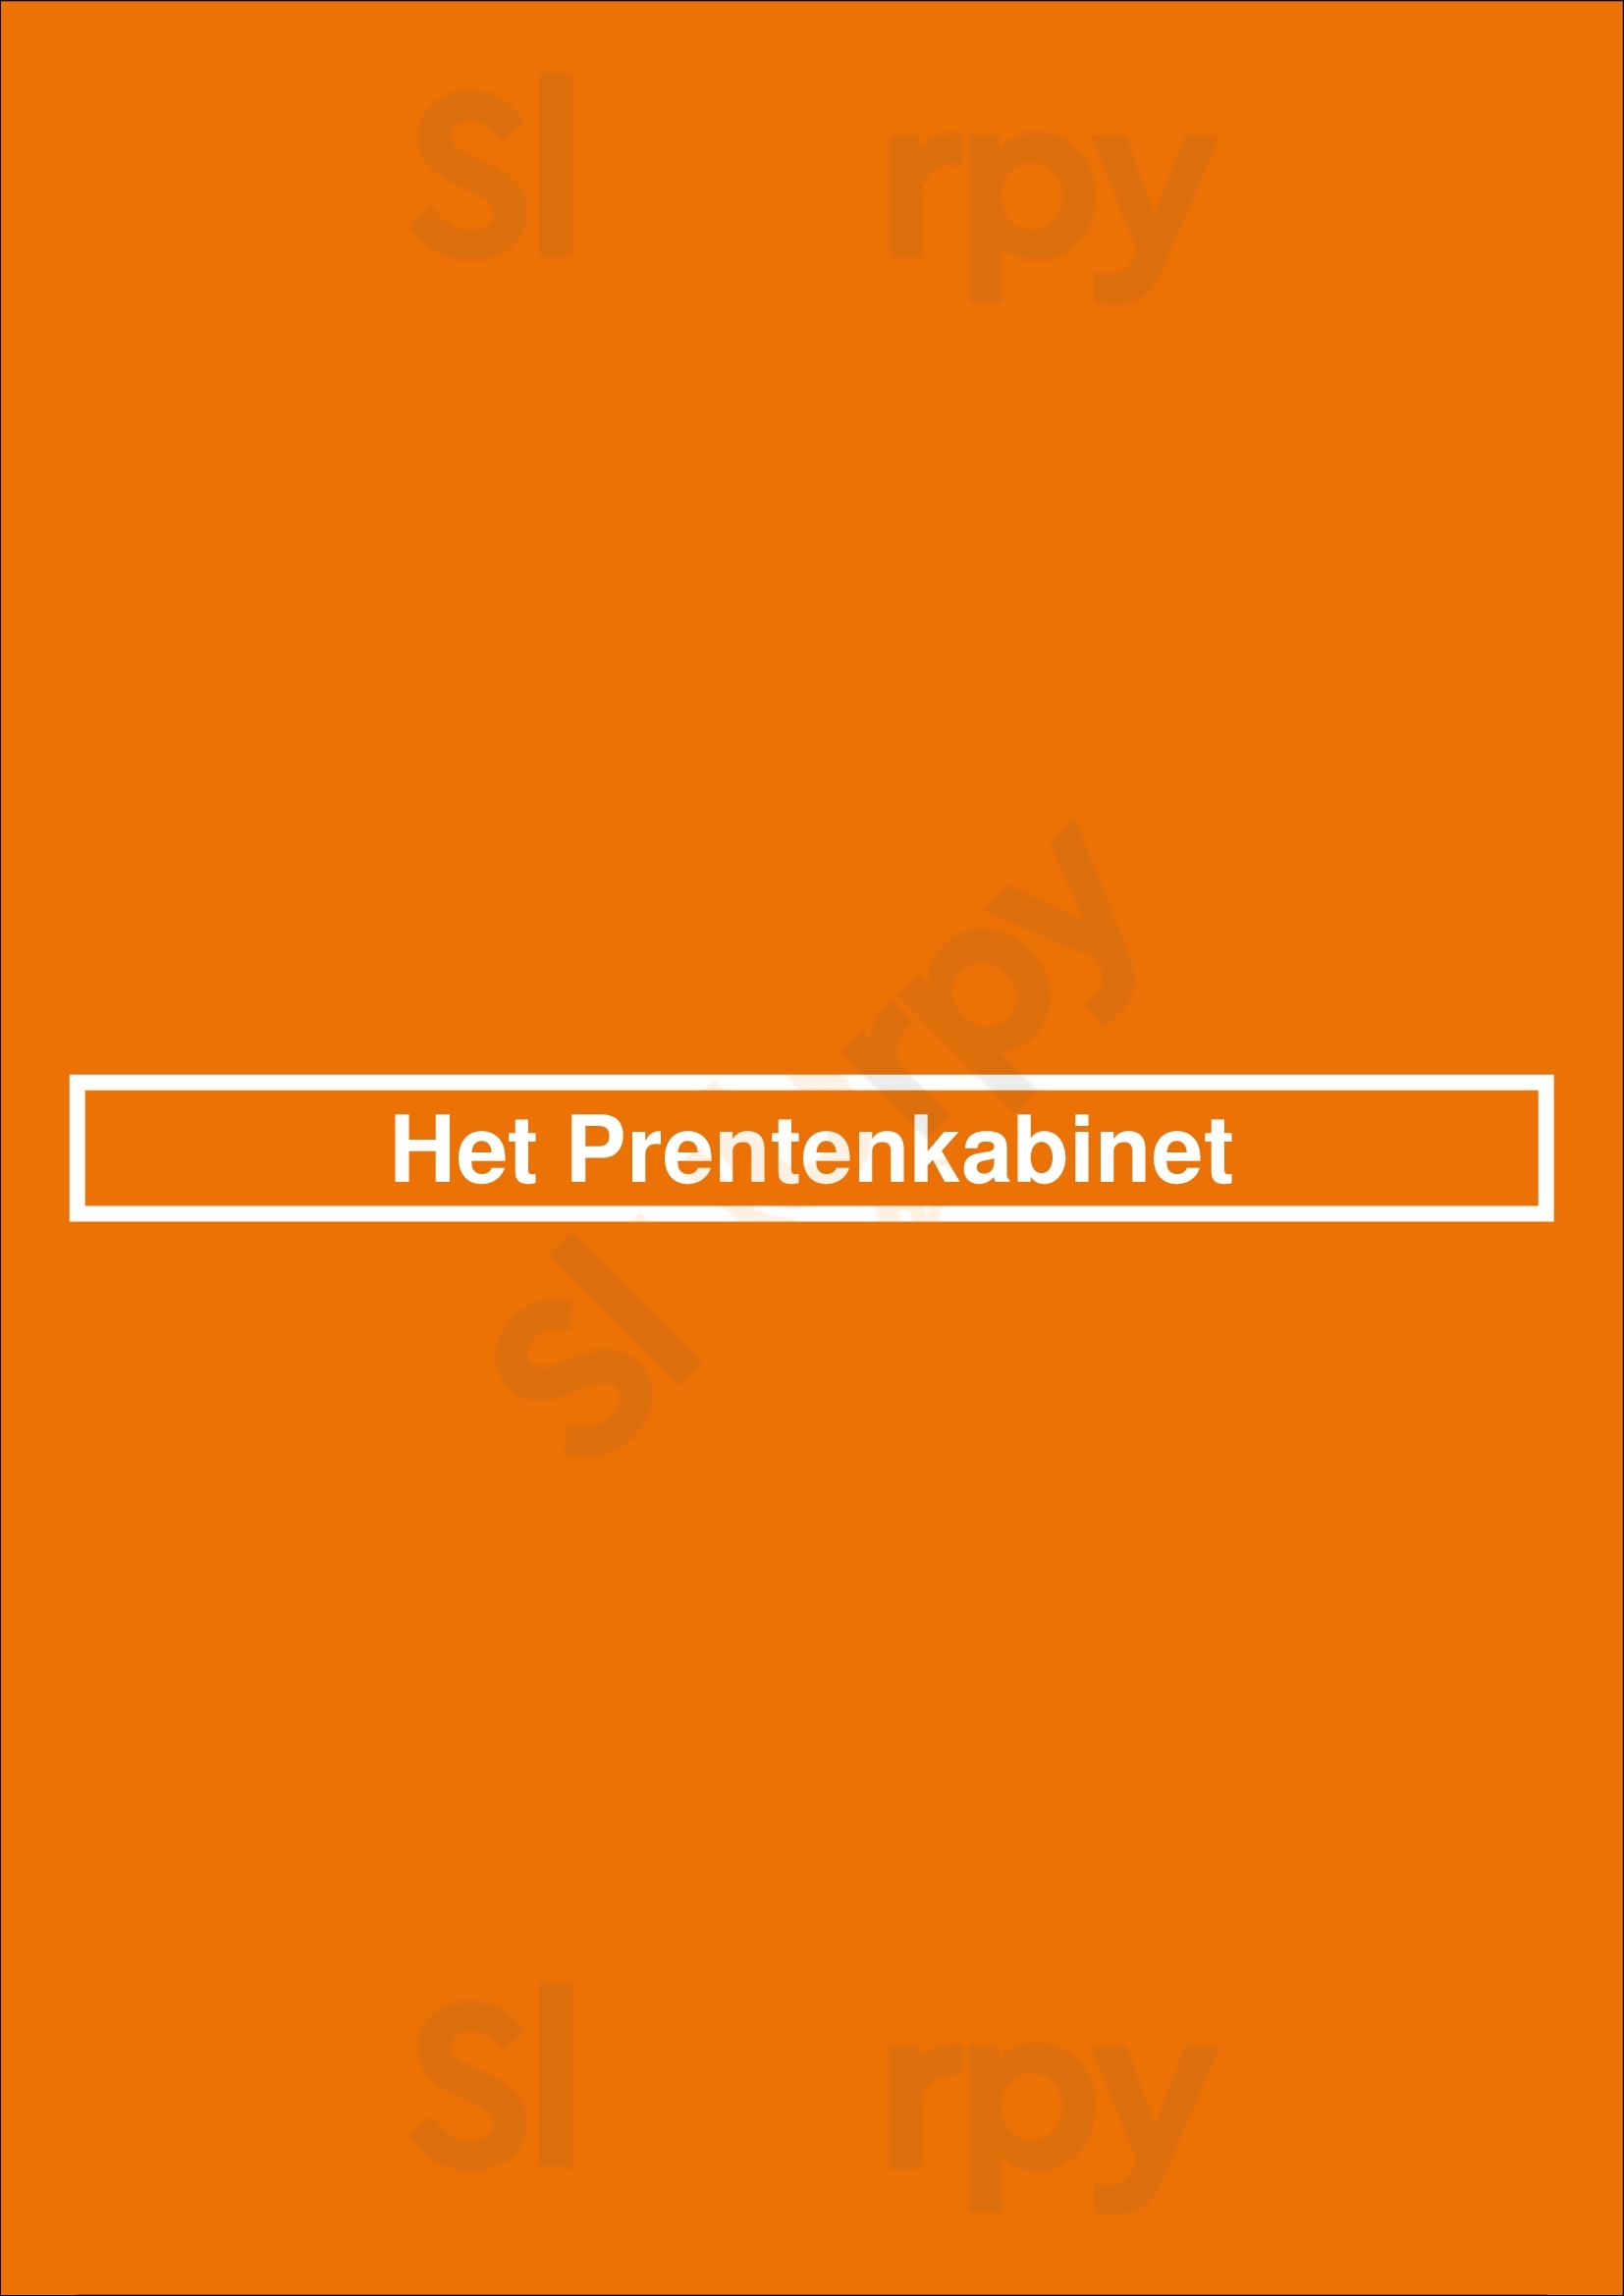 Het Prentenkabinet Leiden Menu - 1